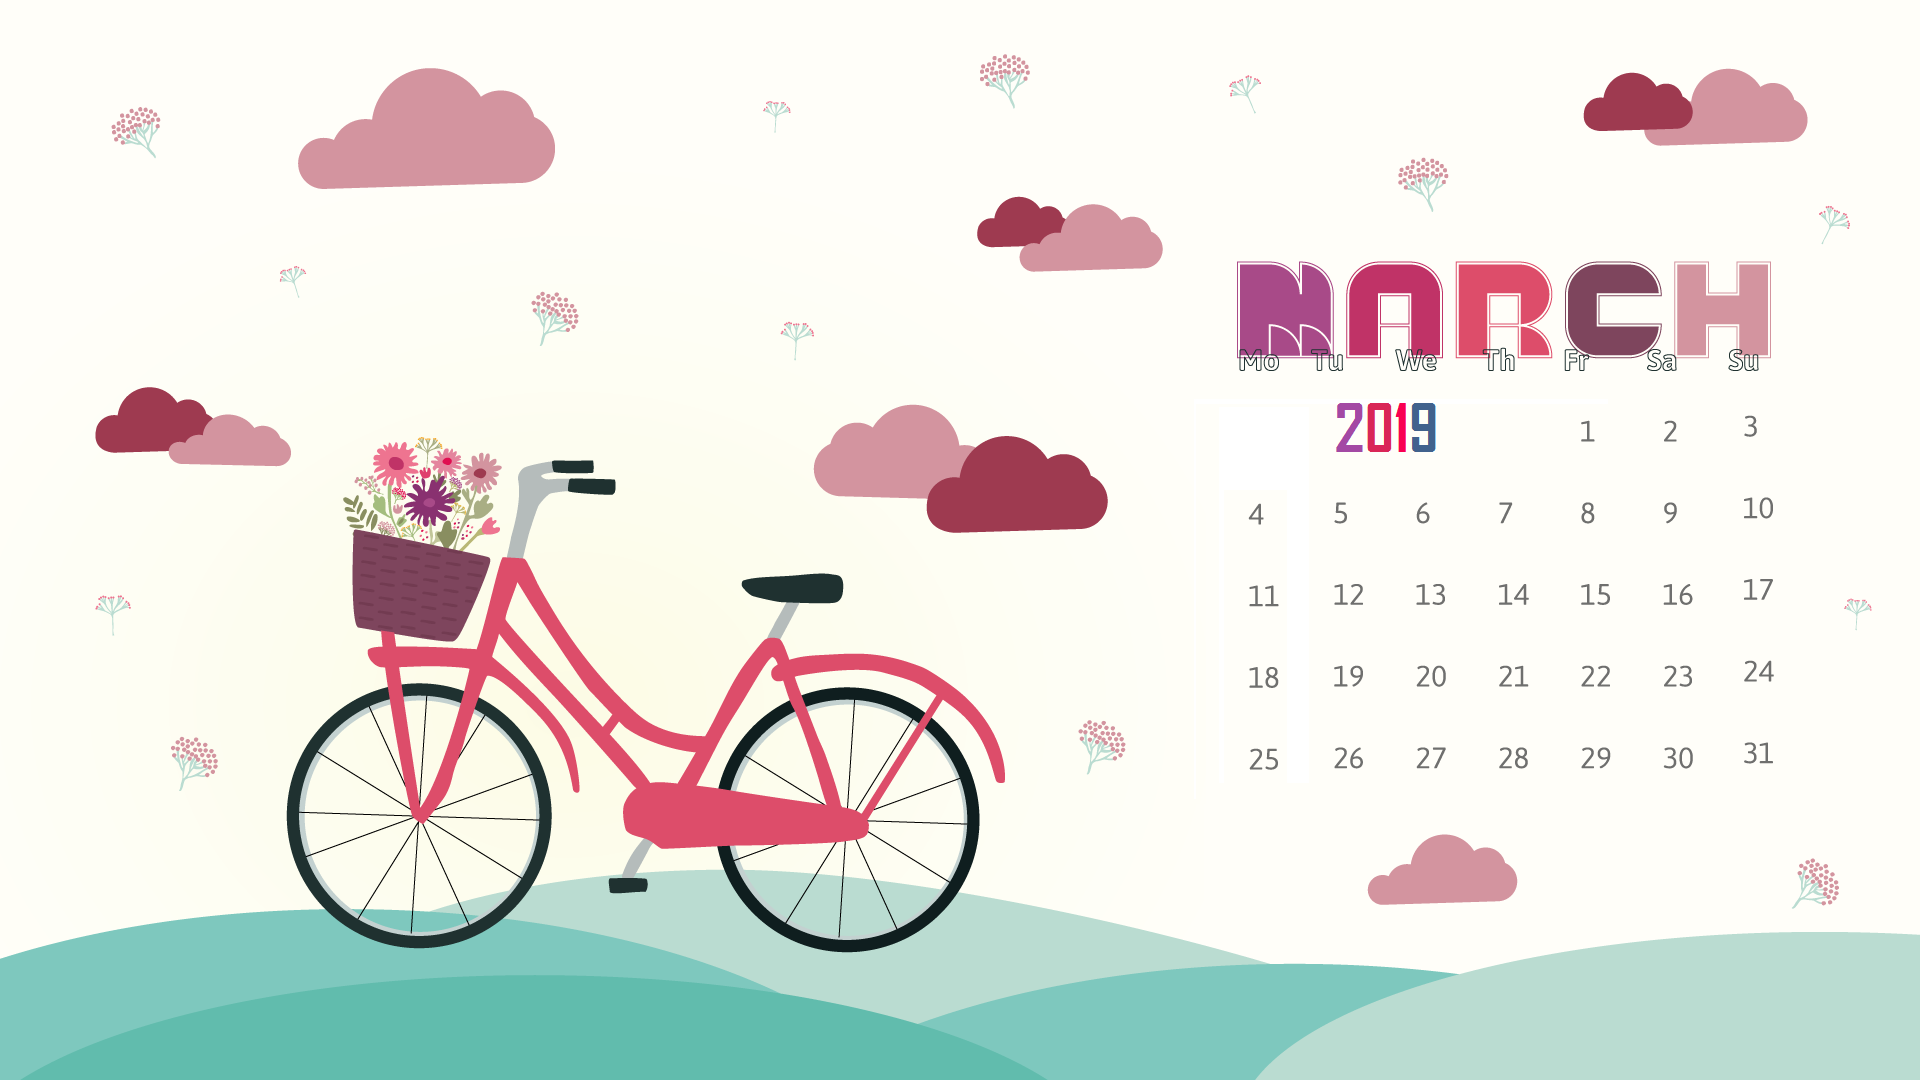 March Desktop Calendar Wallpaper